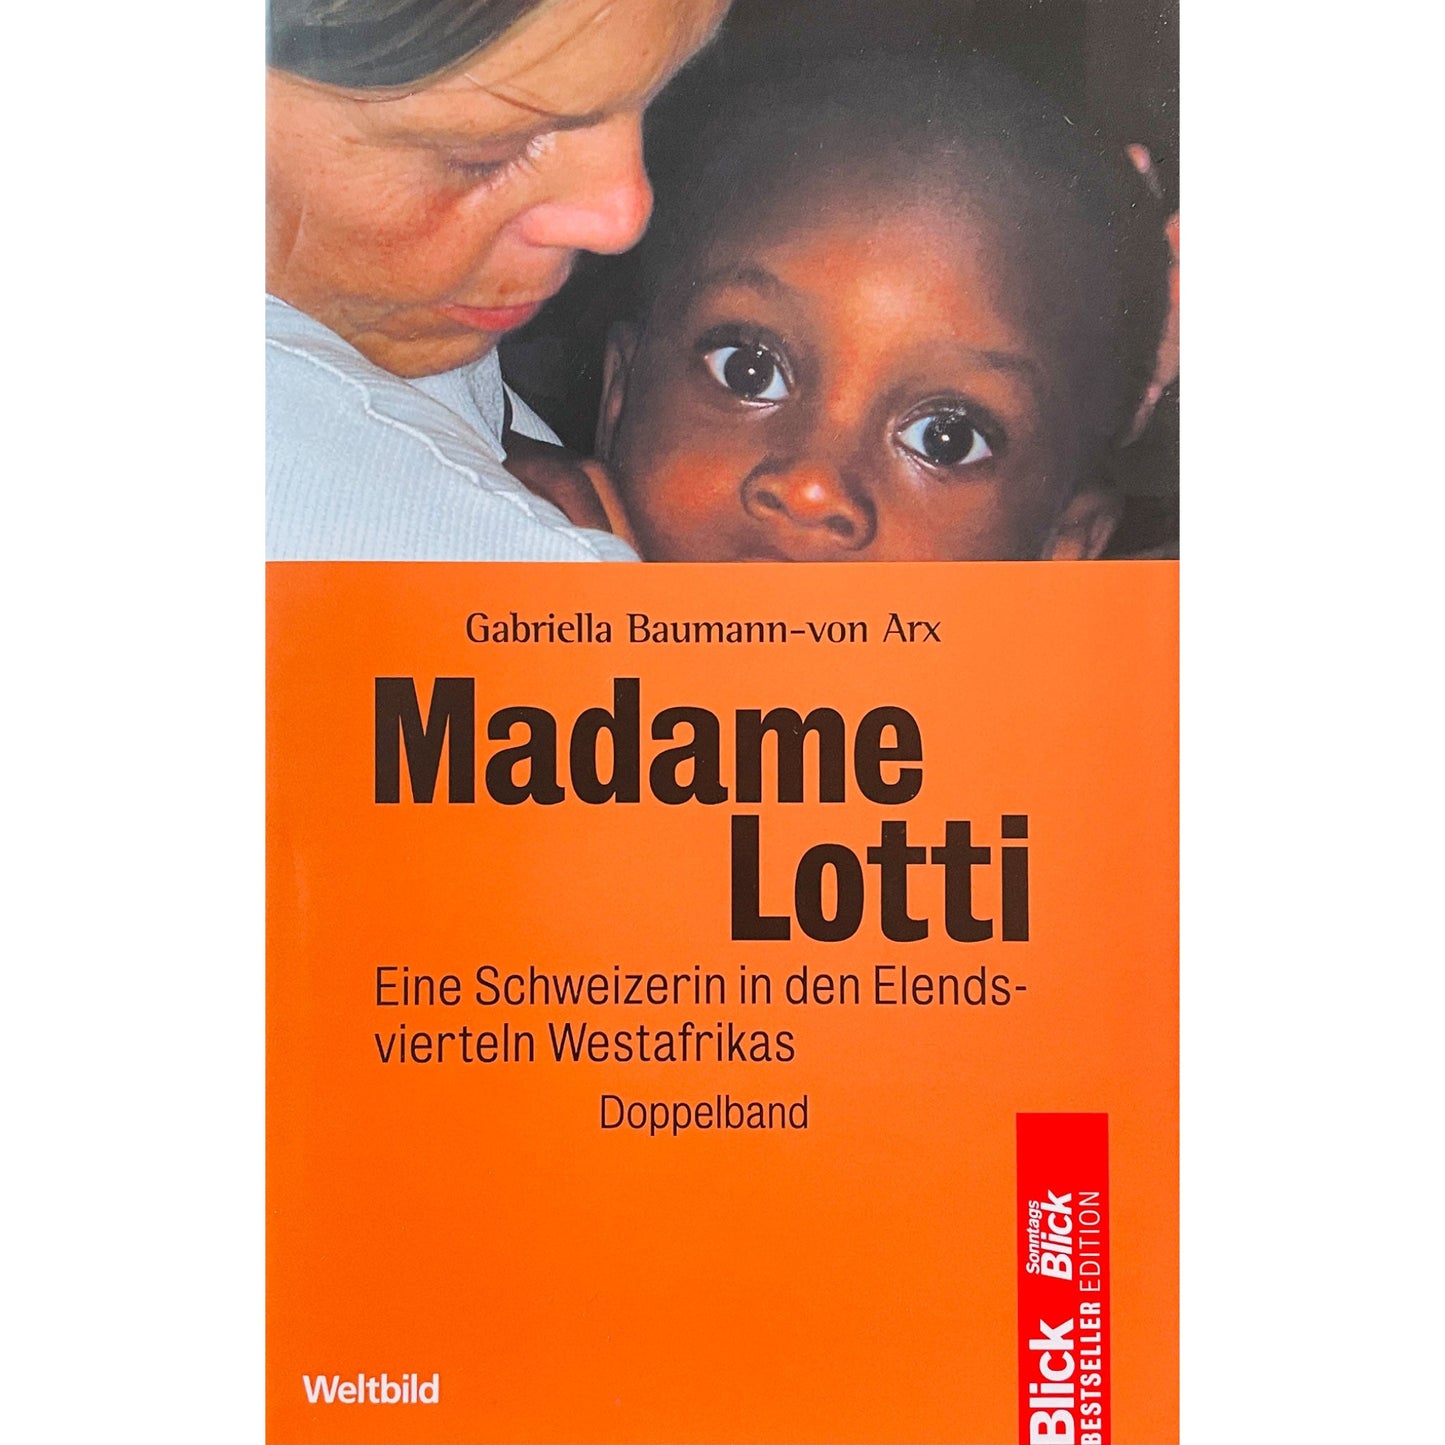 Madame Lotti - Eine Schweizerin in den Elendsvierteln Westafrika